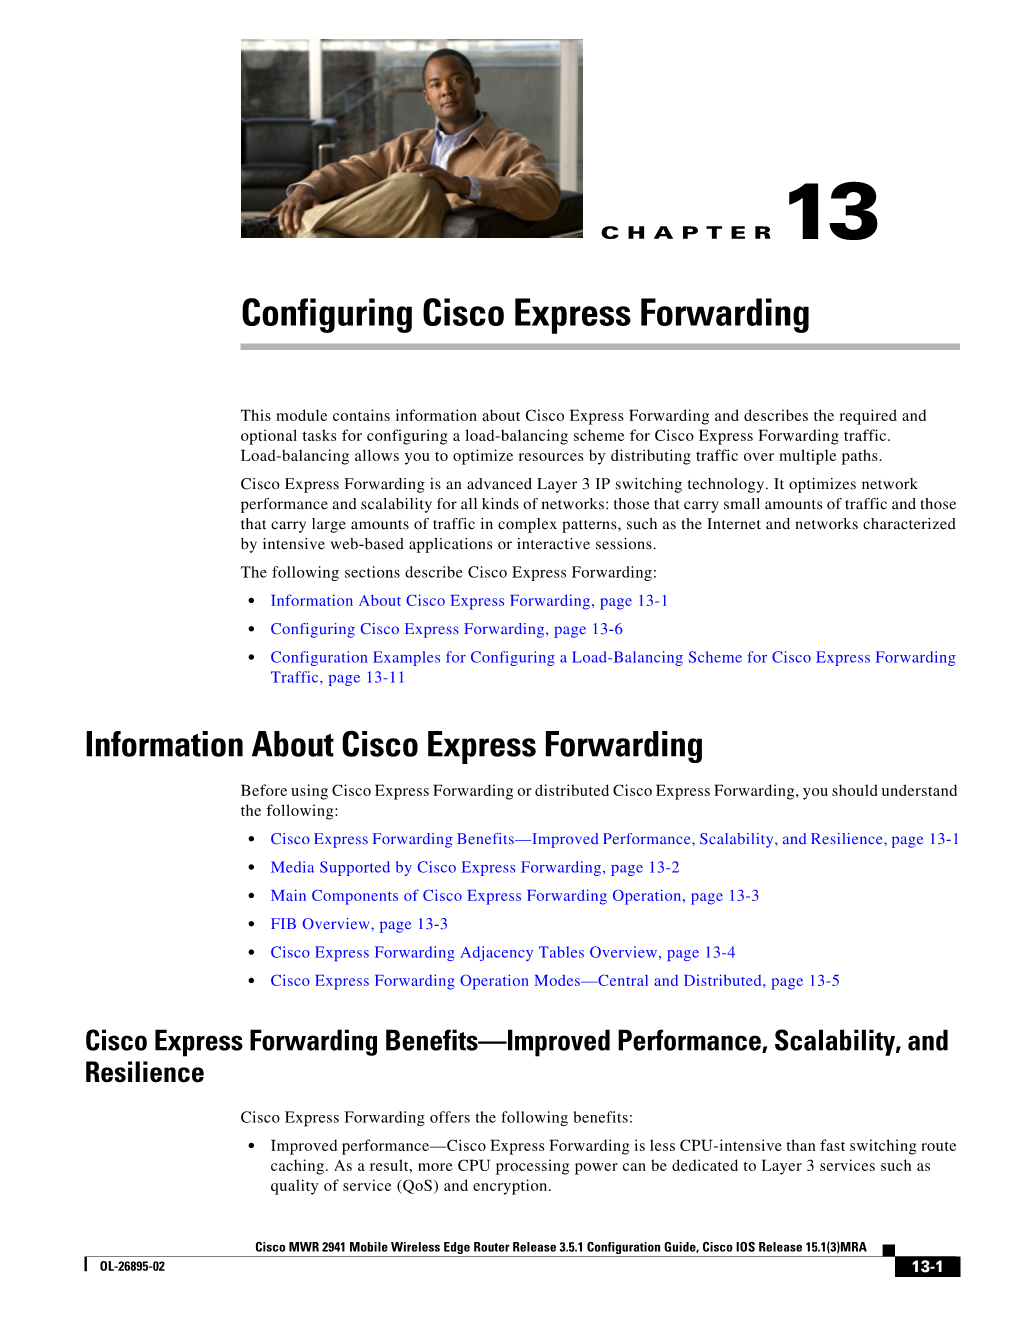 Configuring Cisco Express Forwarding